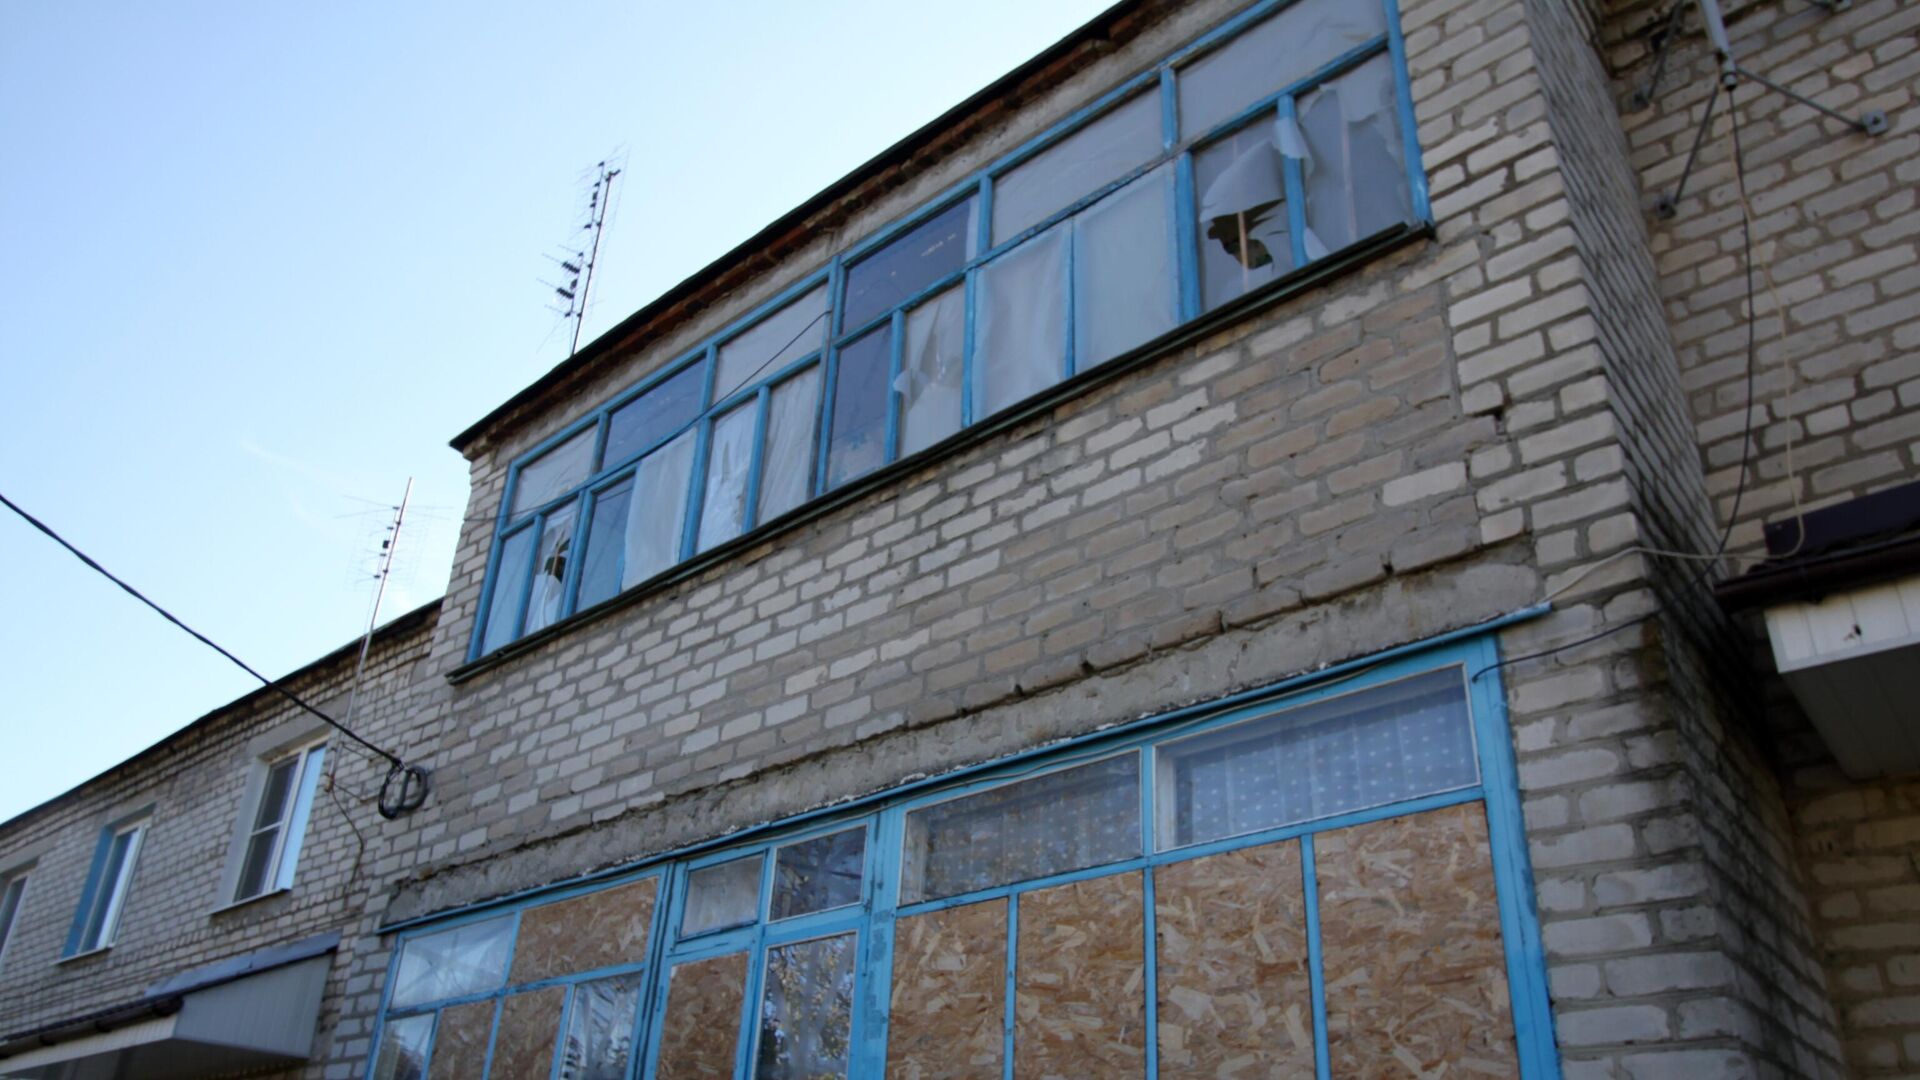 Окна жилого дома в поселке Ясное Донецкой области, пострадавшие в результате обстрела - РИА Новости, 1920, 28.04.2022